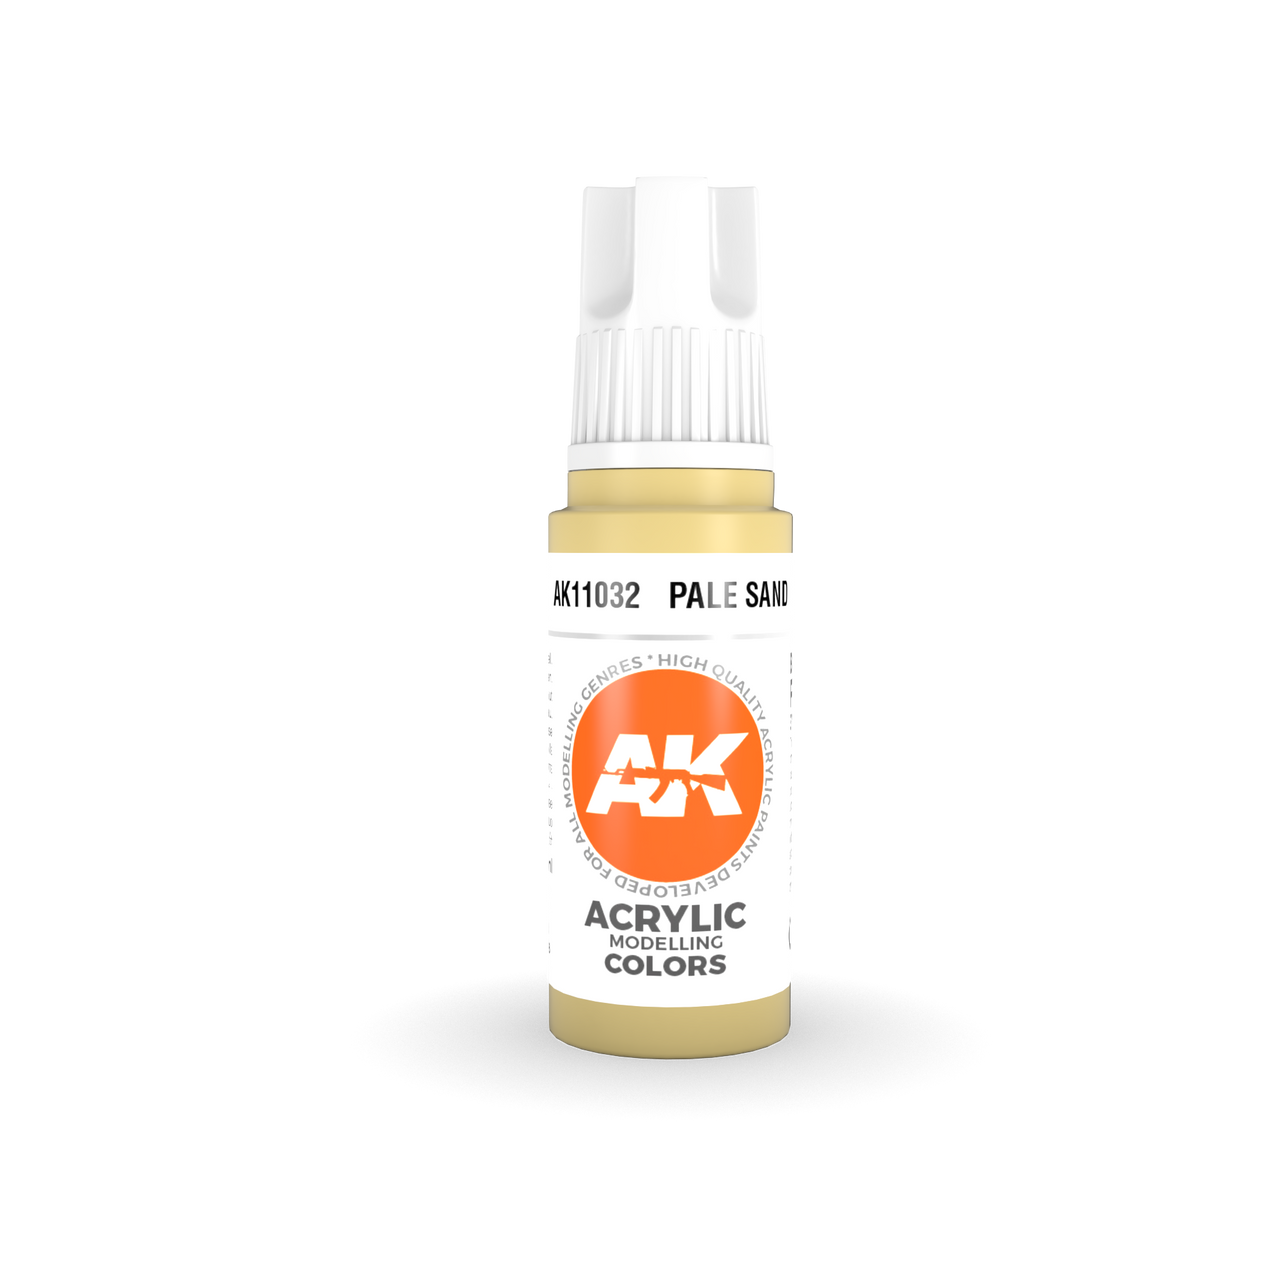 Pale Sand - AK 3Gen Acrylic